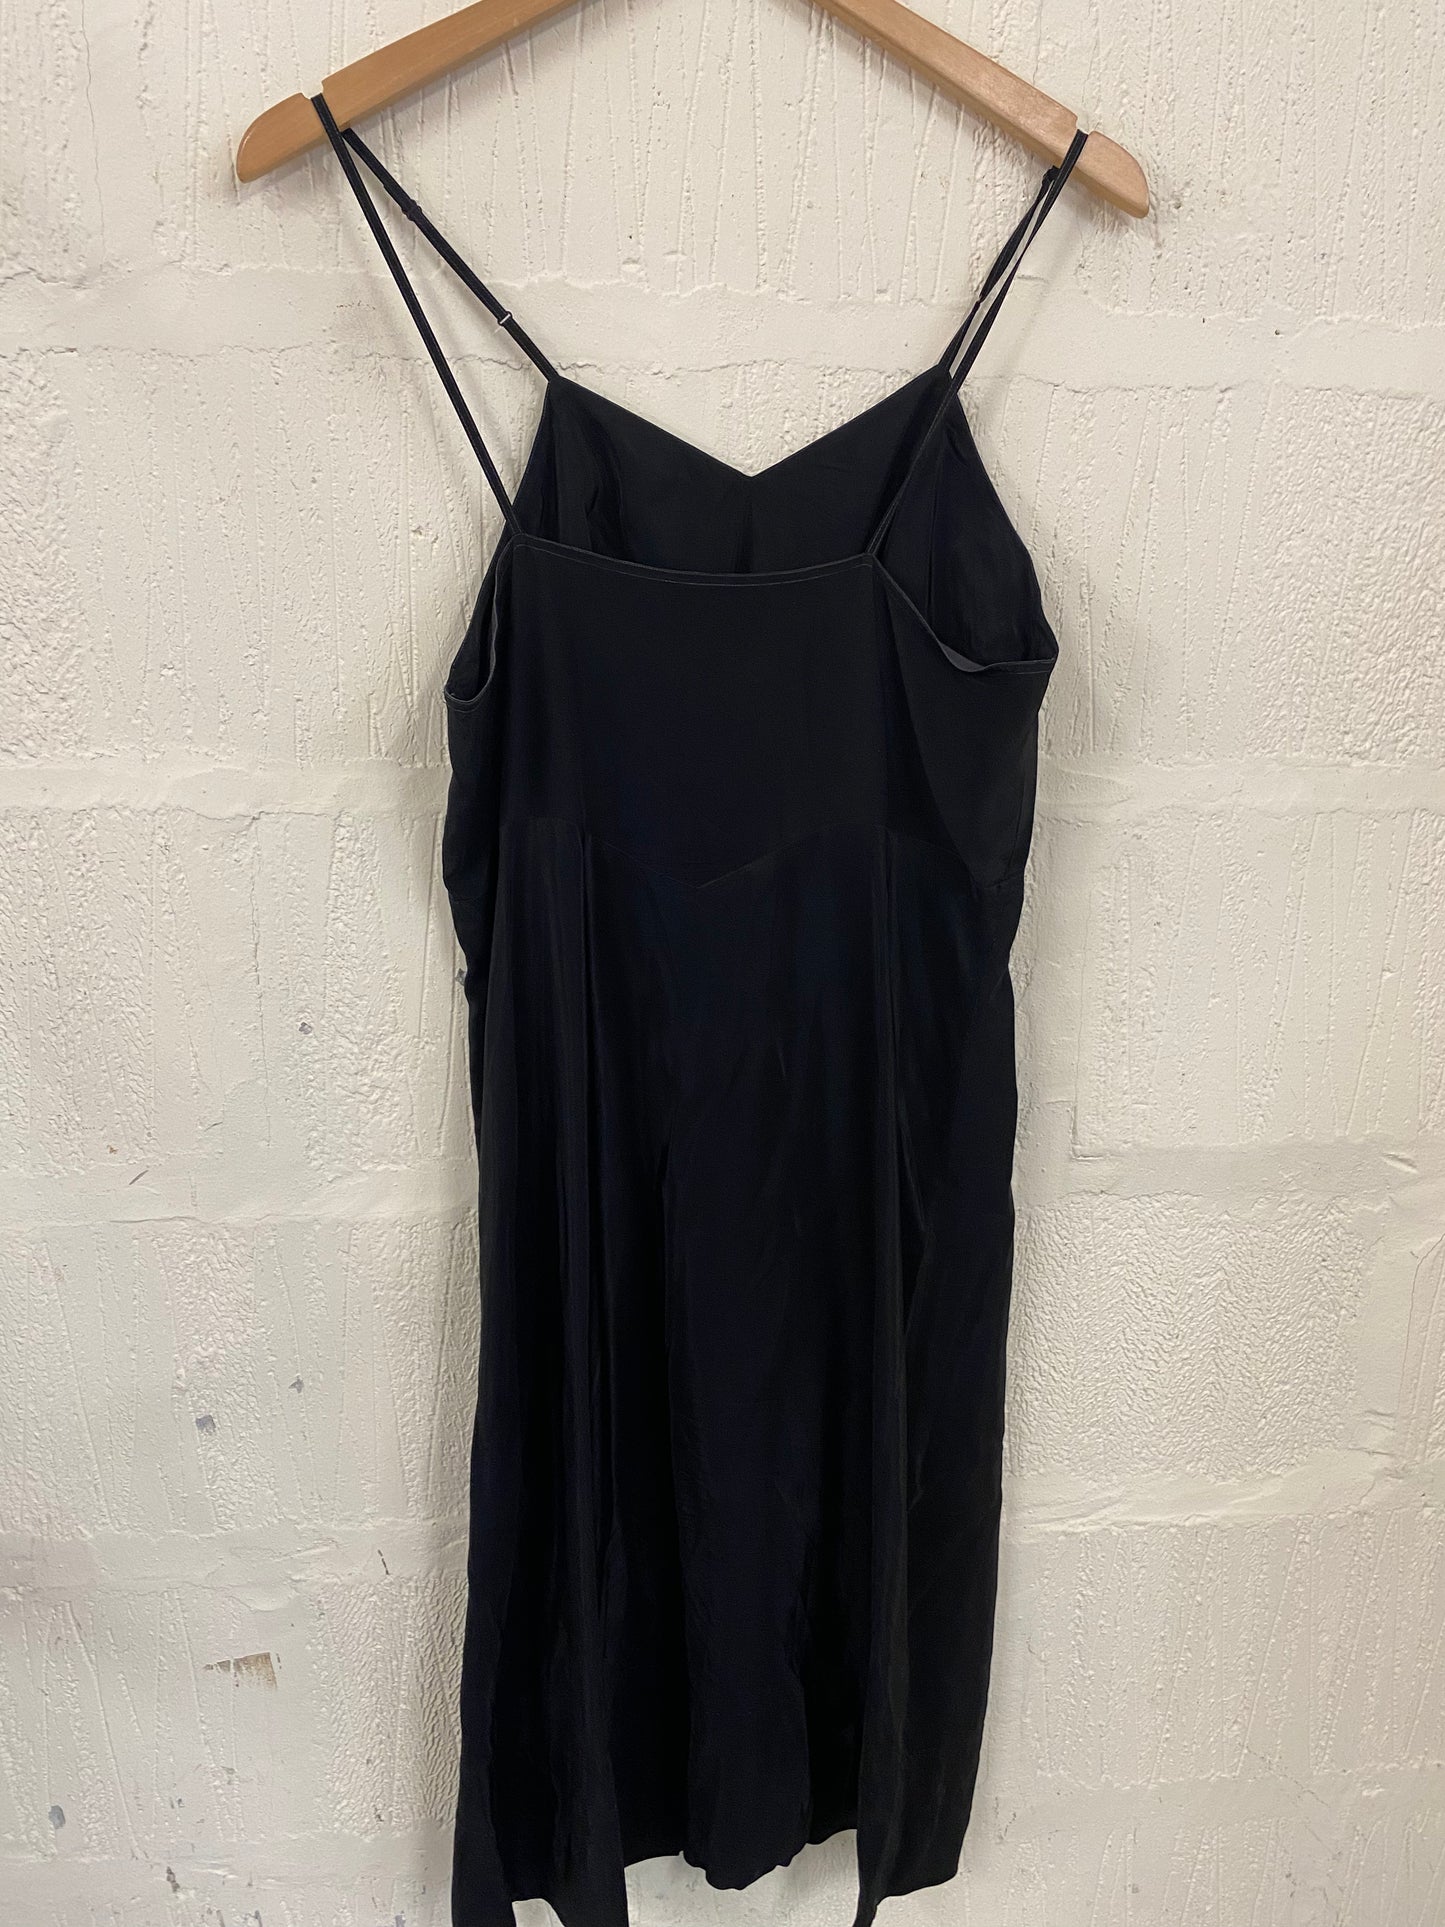 Vintage Black Slip Dress Size 12